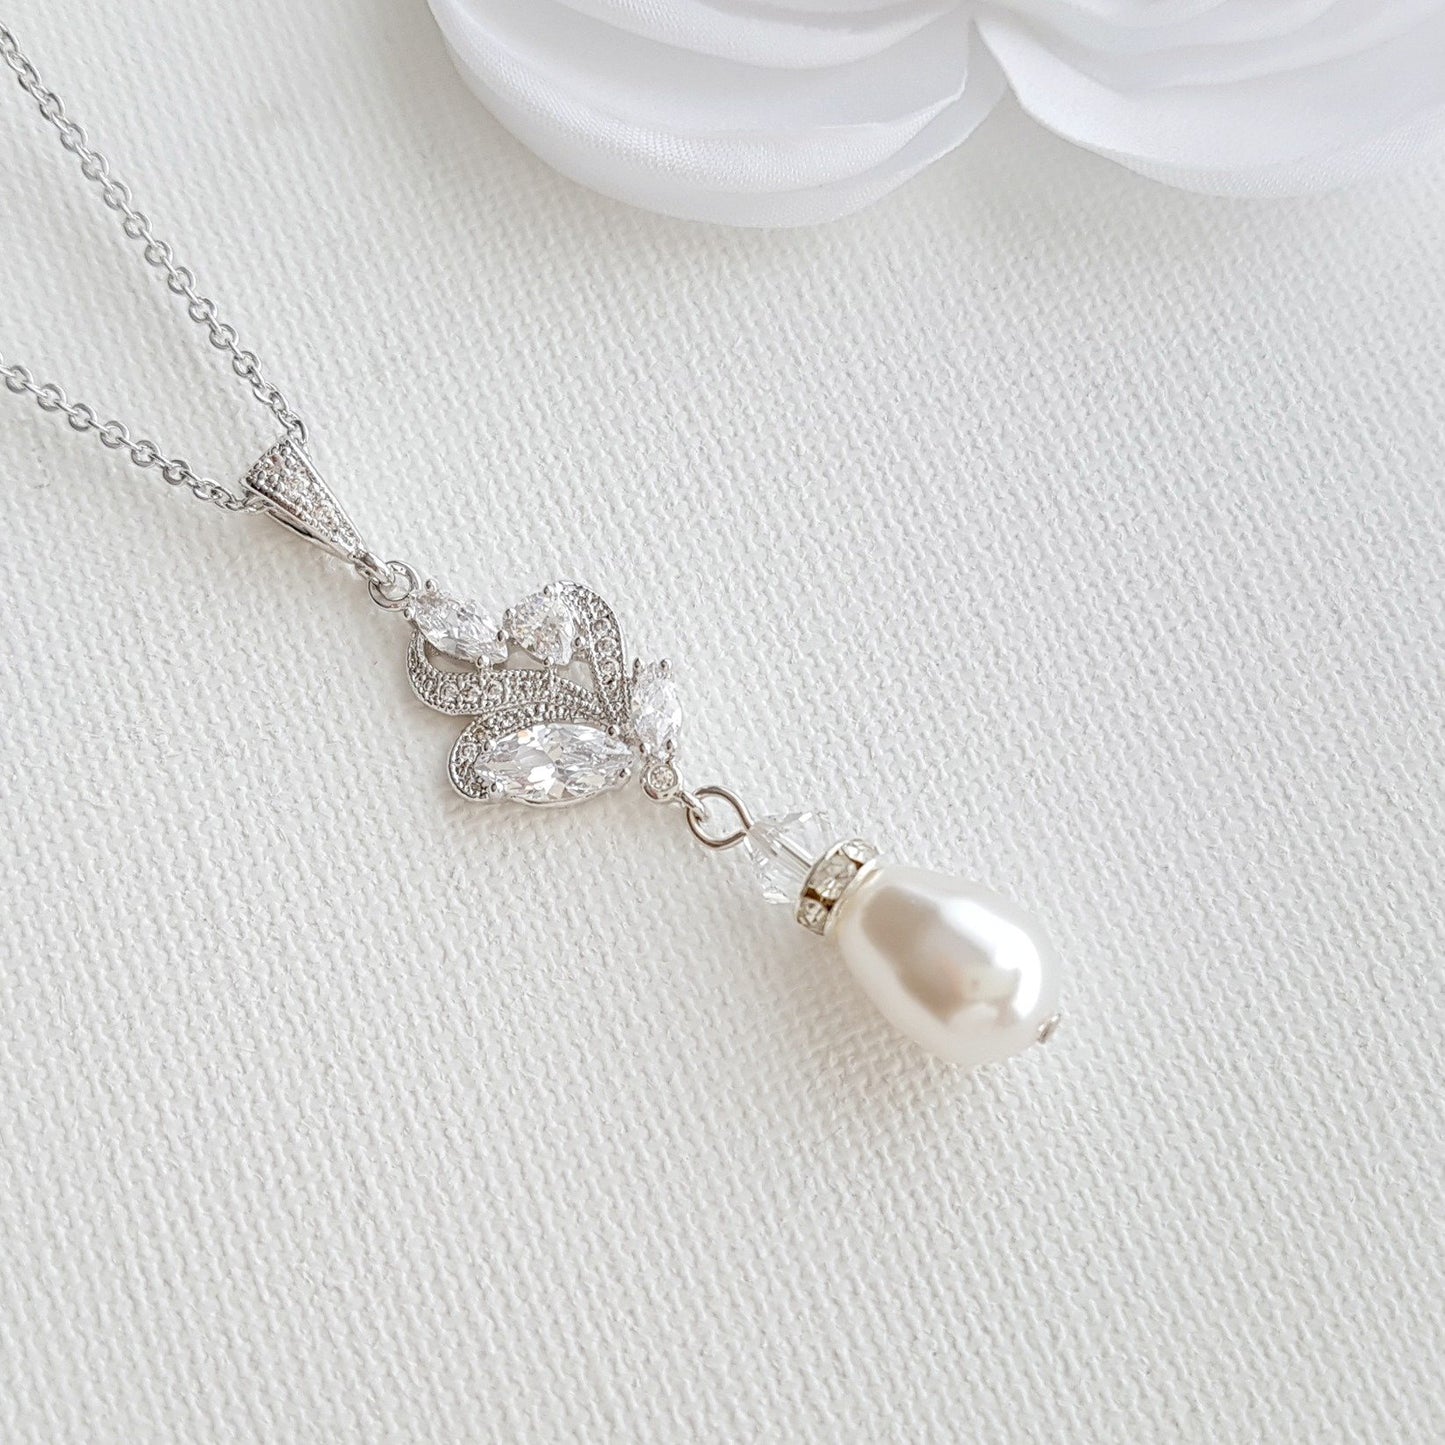 Teardrop Pearl Pendant Set in Silver for Weddings-Wavy